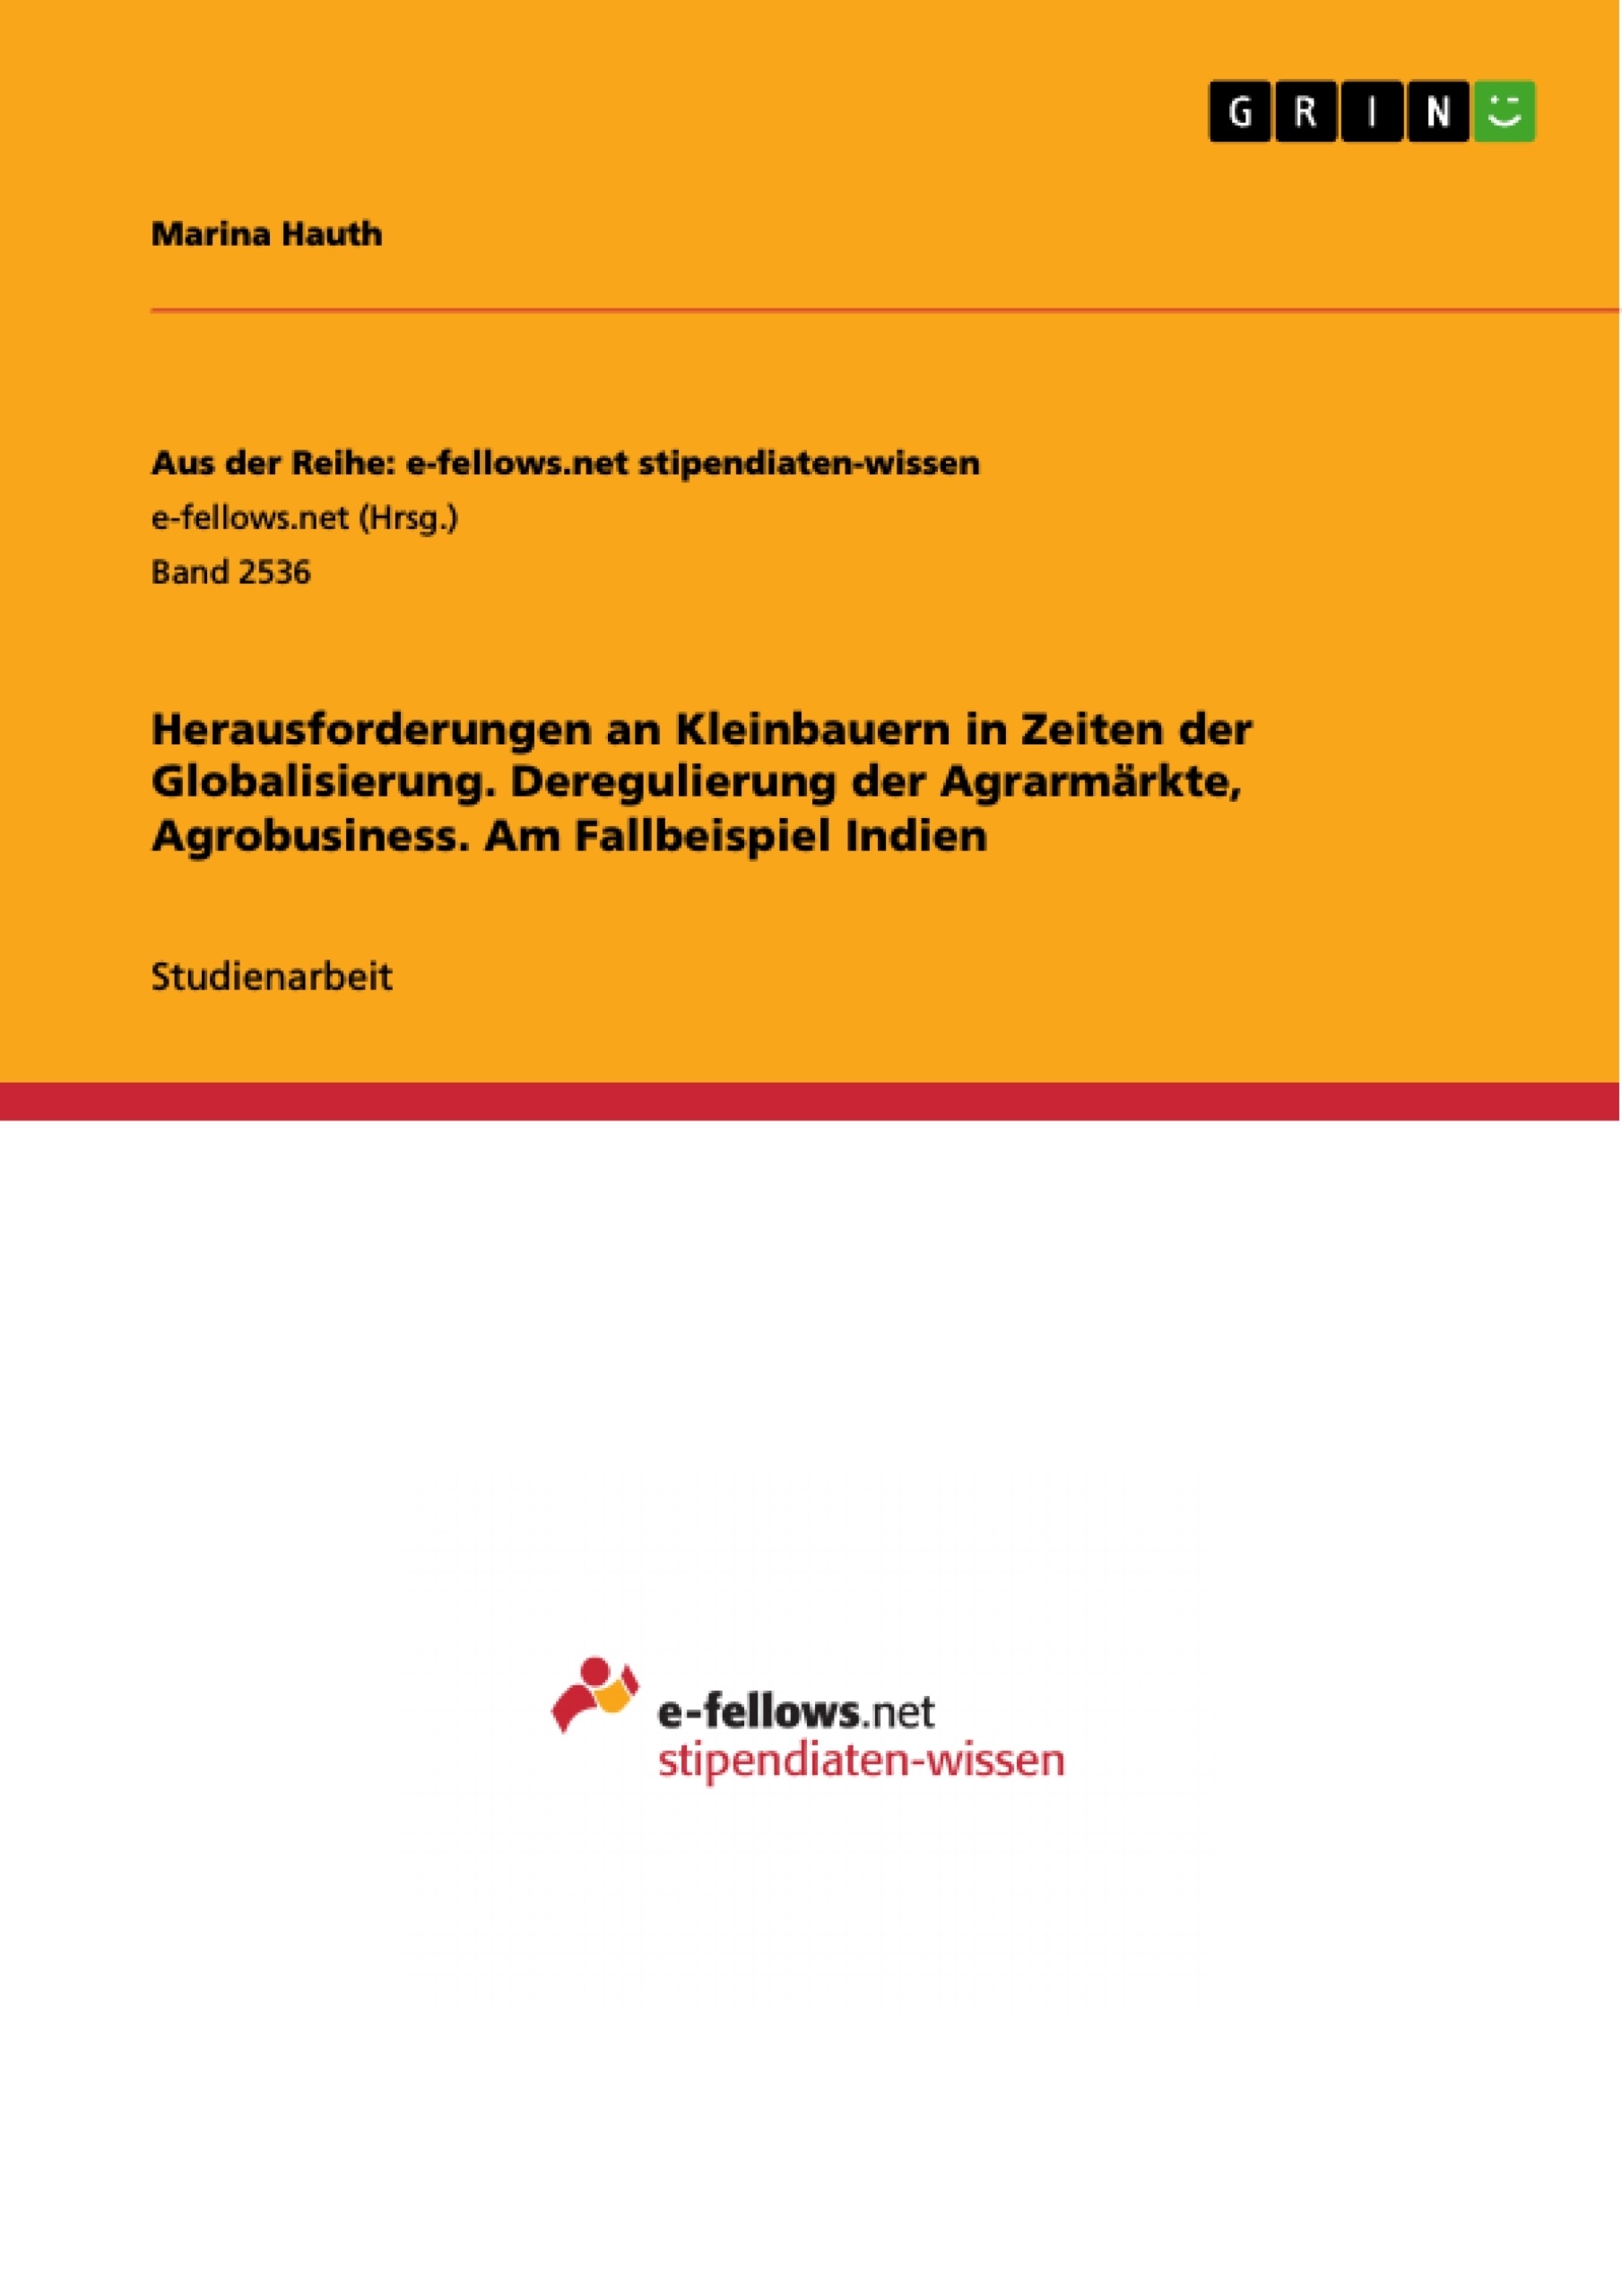 Title: Herausforderungen an Kleinbauern in Zeiten der Globalisierung. Deregulierung der Agrarmärkte, Agrobusiness. Am Fallbeispiel Indien